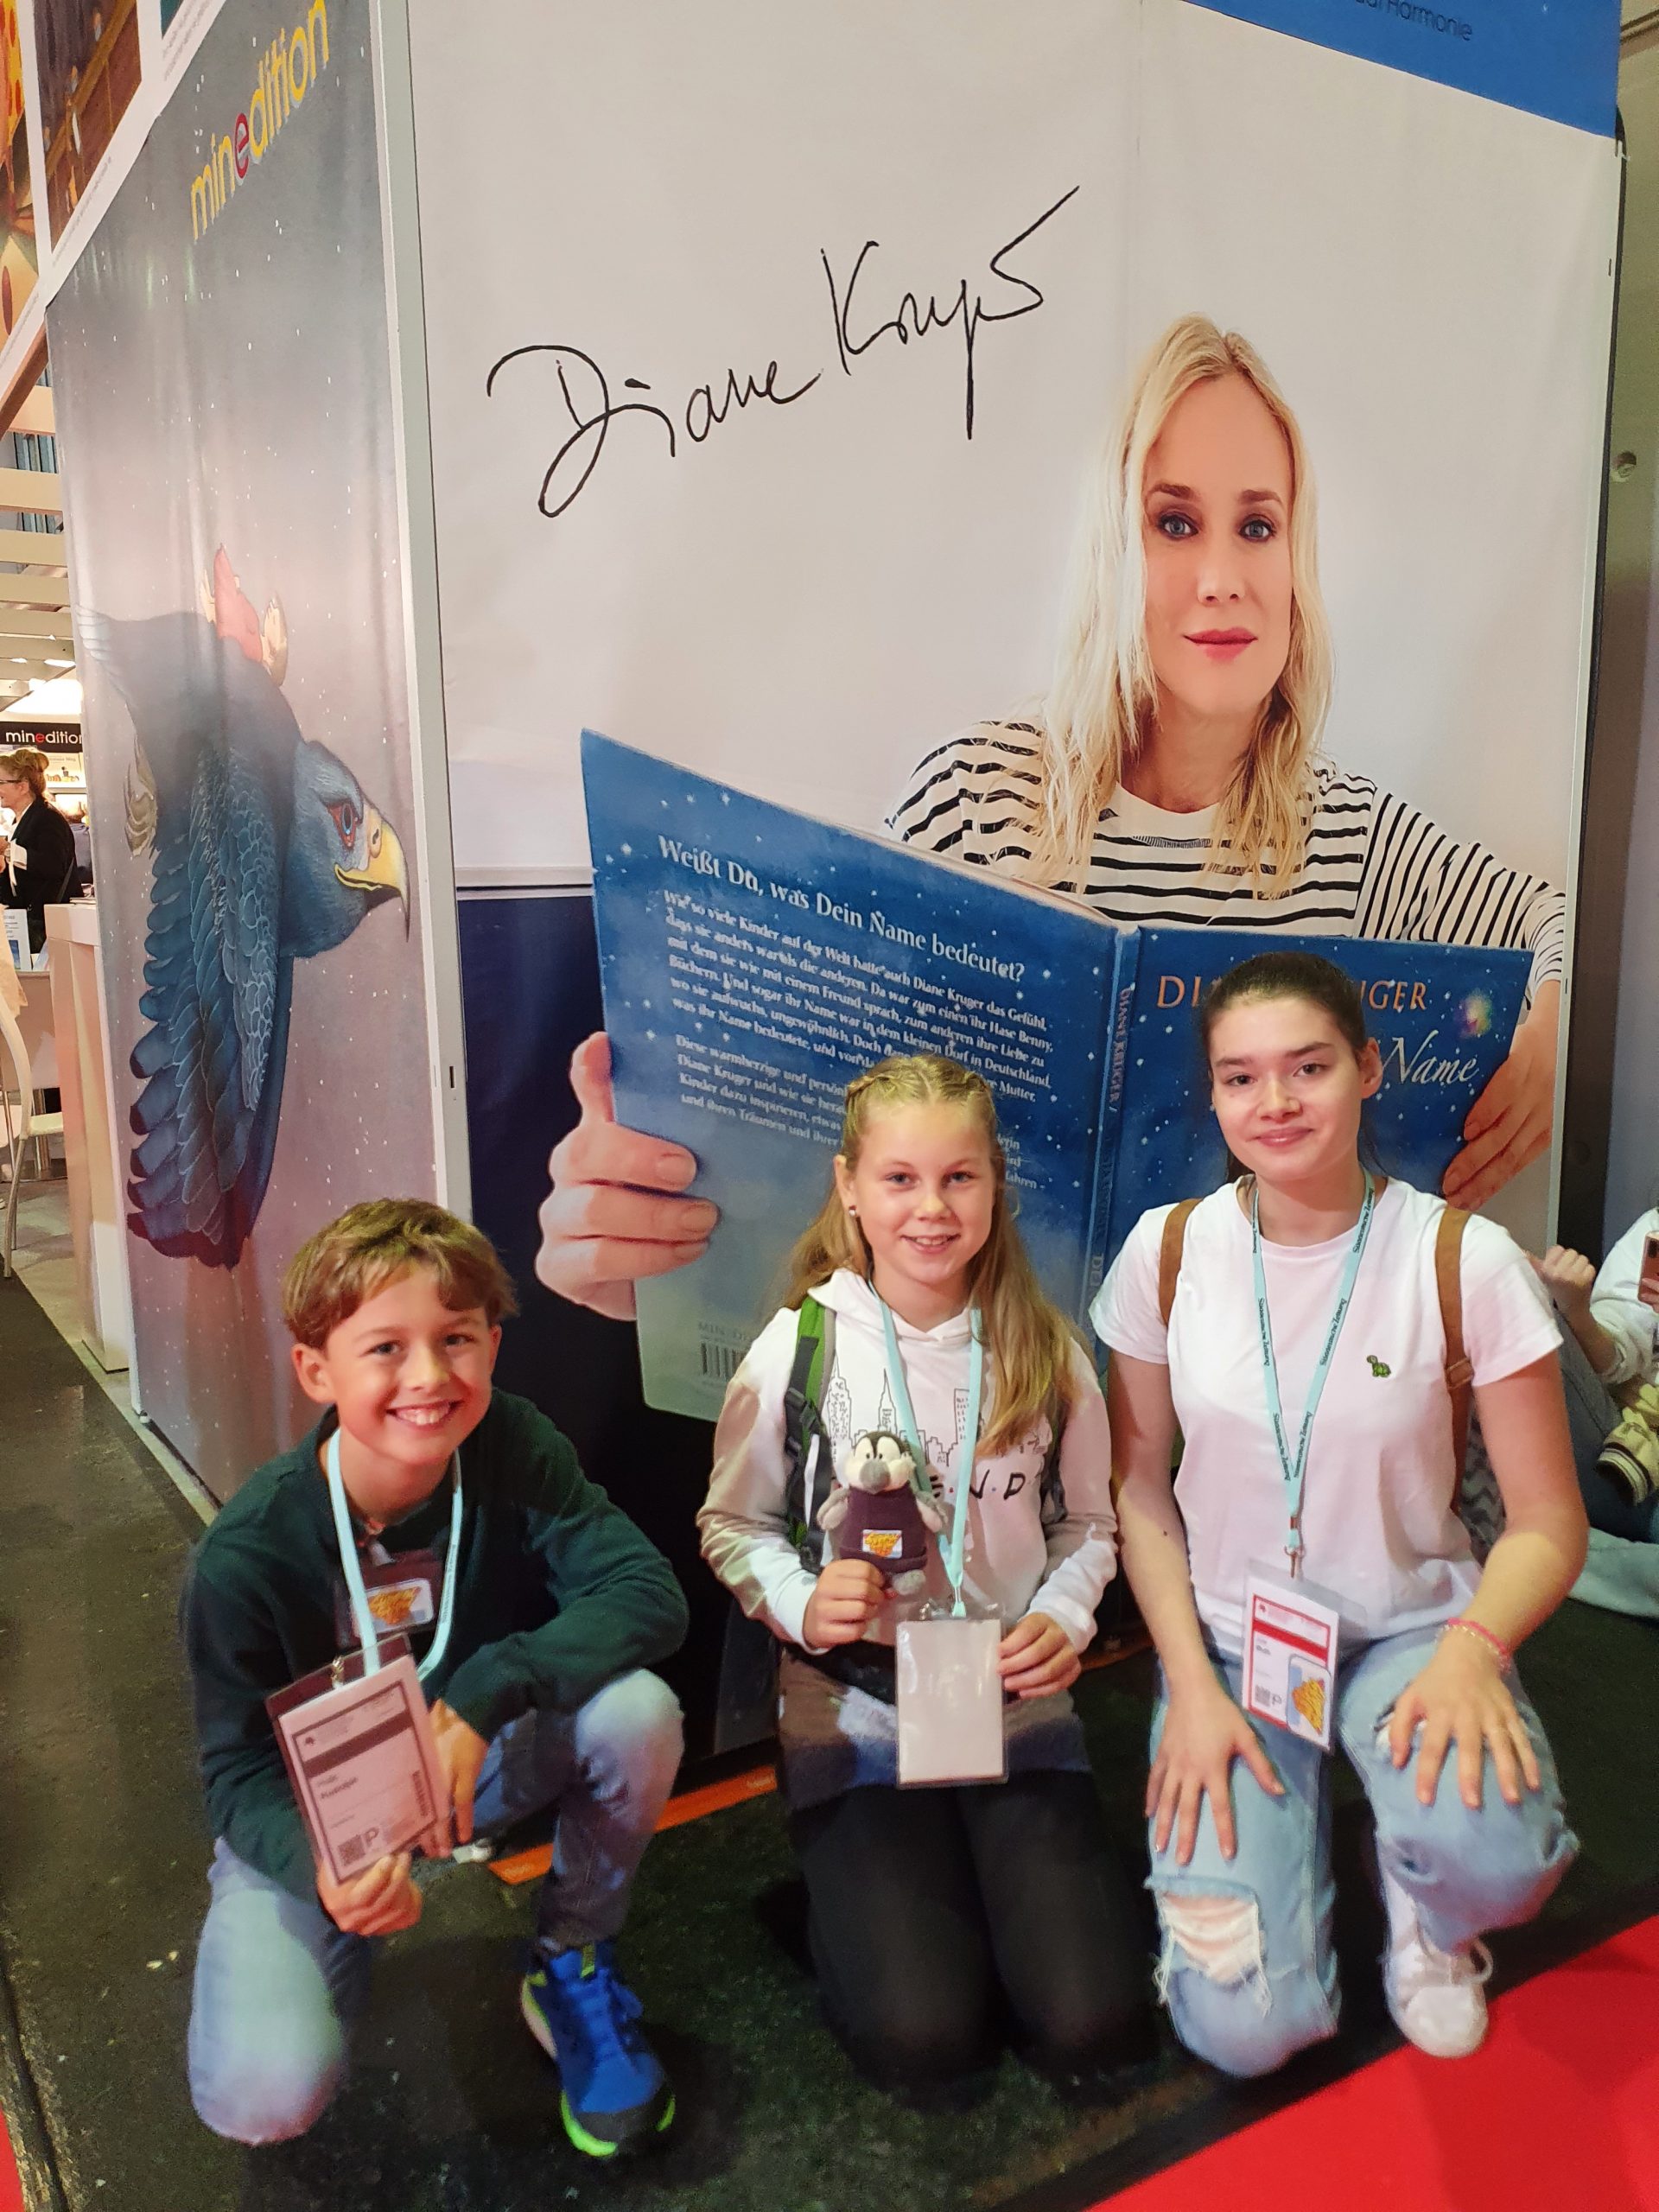 Südpolshowreporter*innen vor "Diane Kruger" Plakat - Text: Auch Schauspielerin Diane Kruger hat auf der Buchmesse ihr Buch vorgestellt